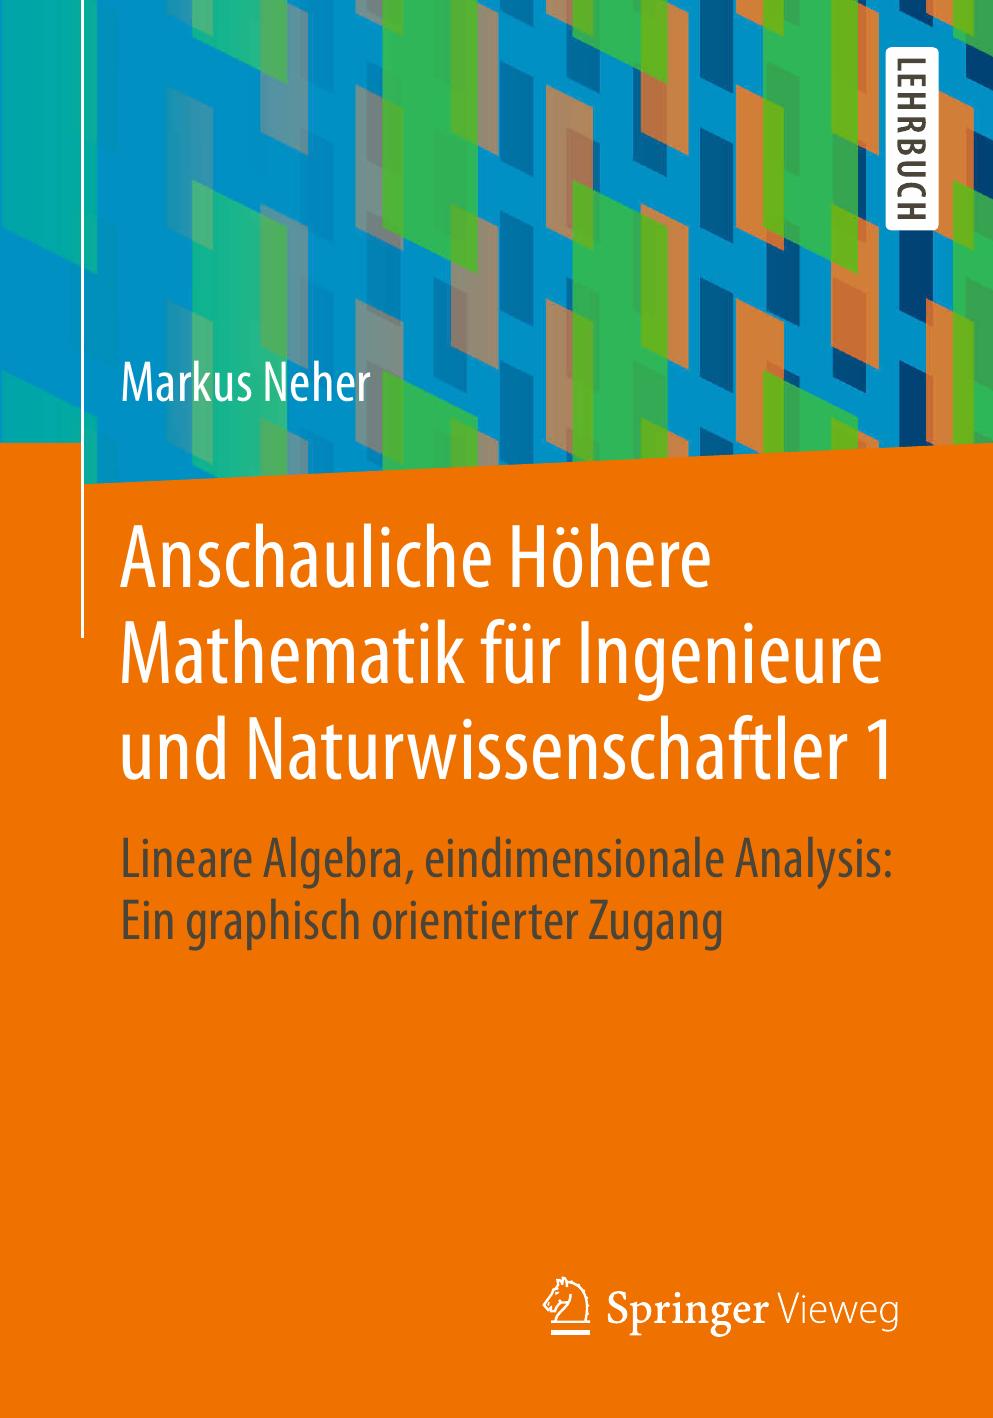 Anschauliche Höhere Mathematik für Ingenieure und Naturwissenschaftler 1: Lineare Algebra, eindimensionale Analysis: Ein graphisch orientierter Zugang